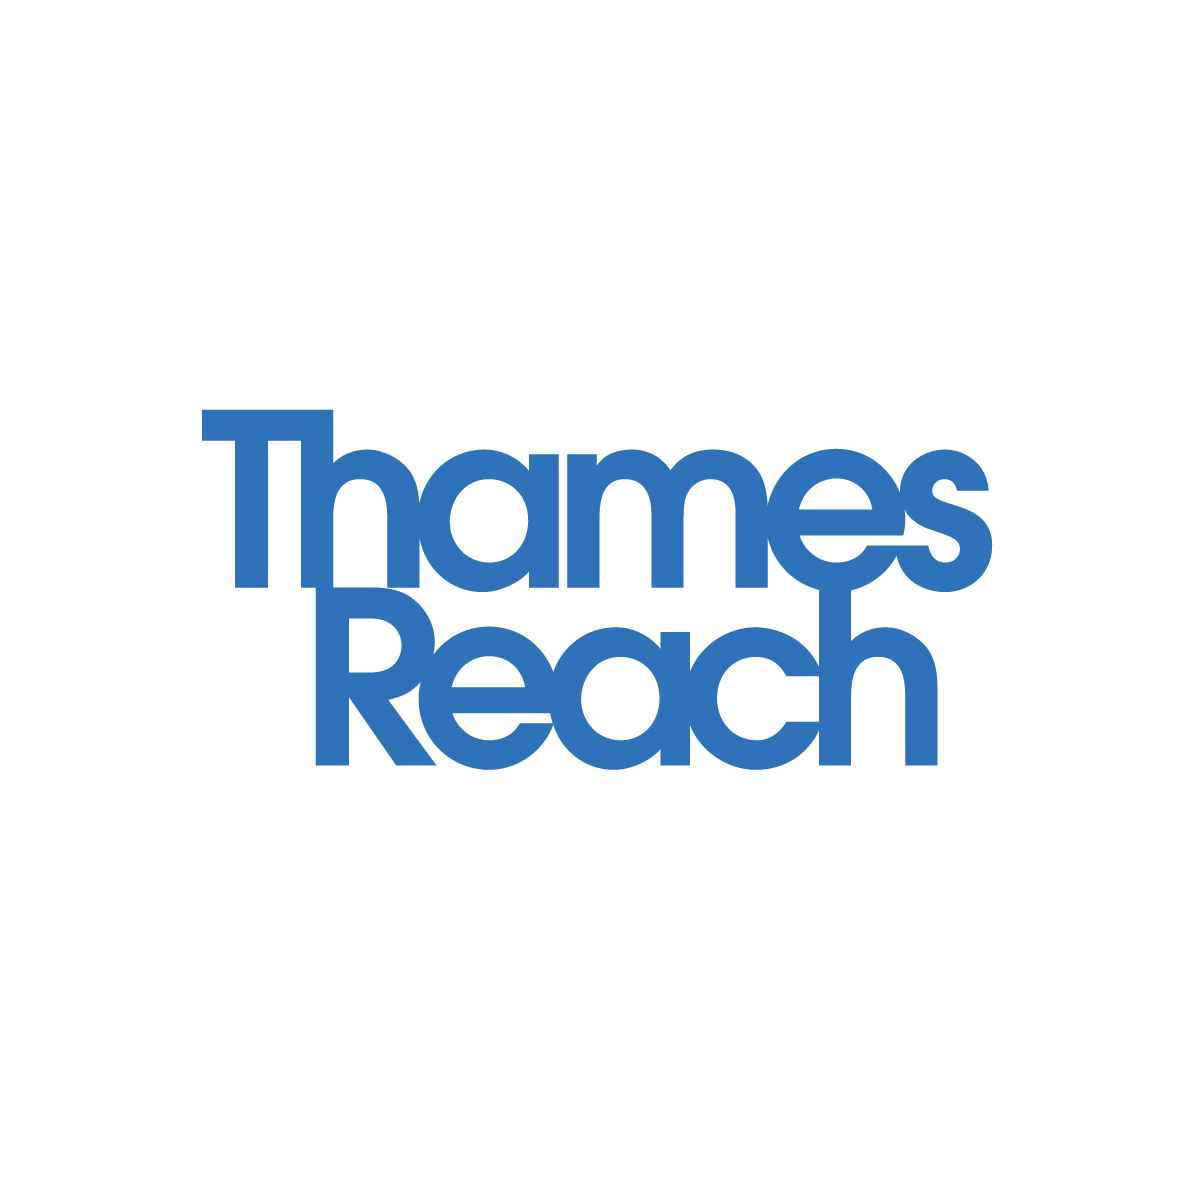 Thames Reach Charity Ltd